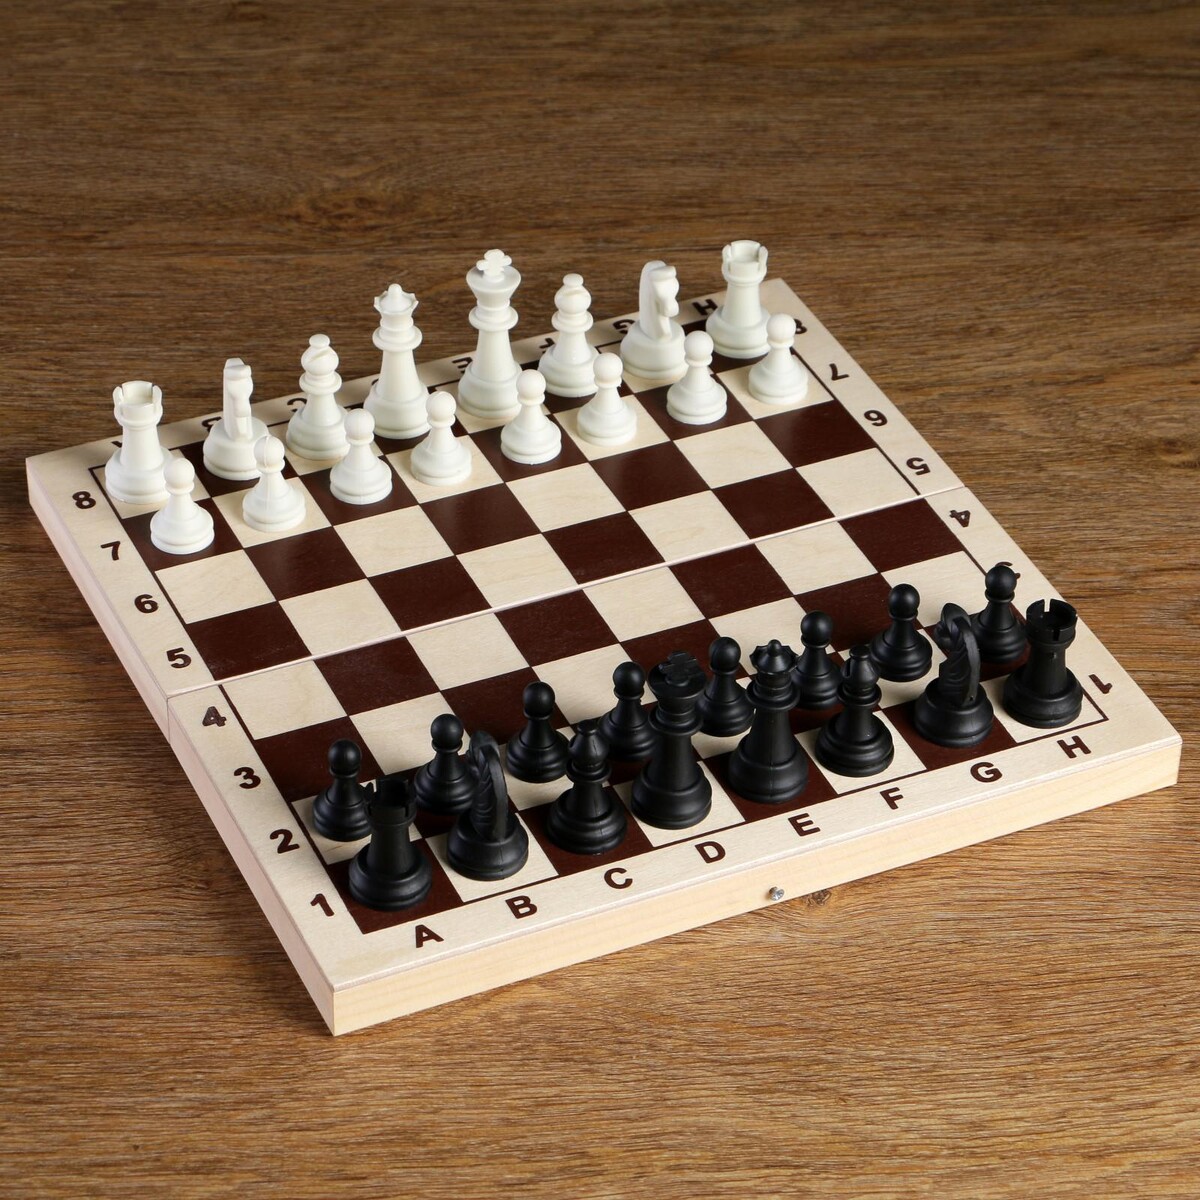 Шахматные фигуры, король h-6.2 см, пешка h-3.2 см, черно-белые титановый король